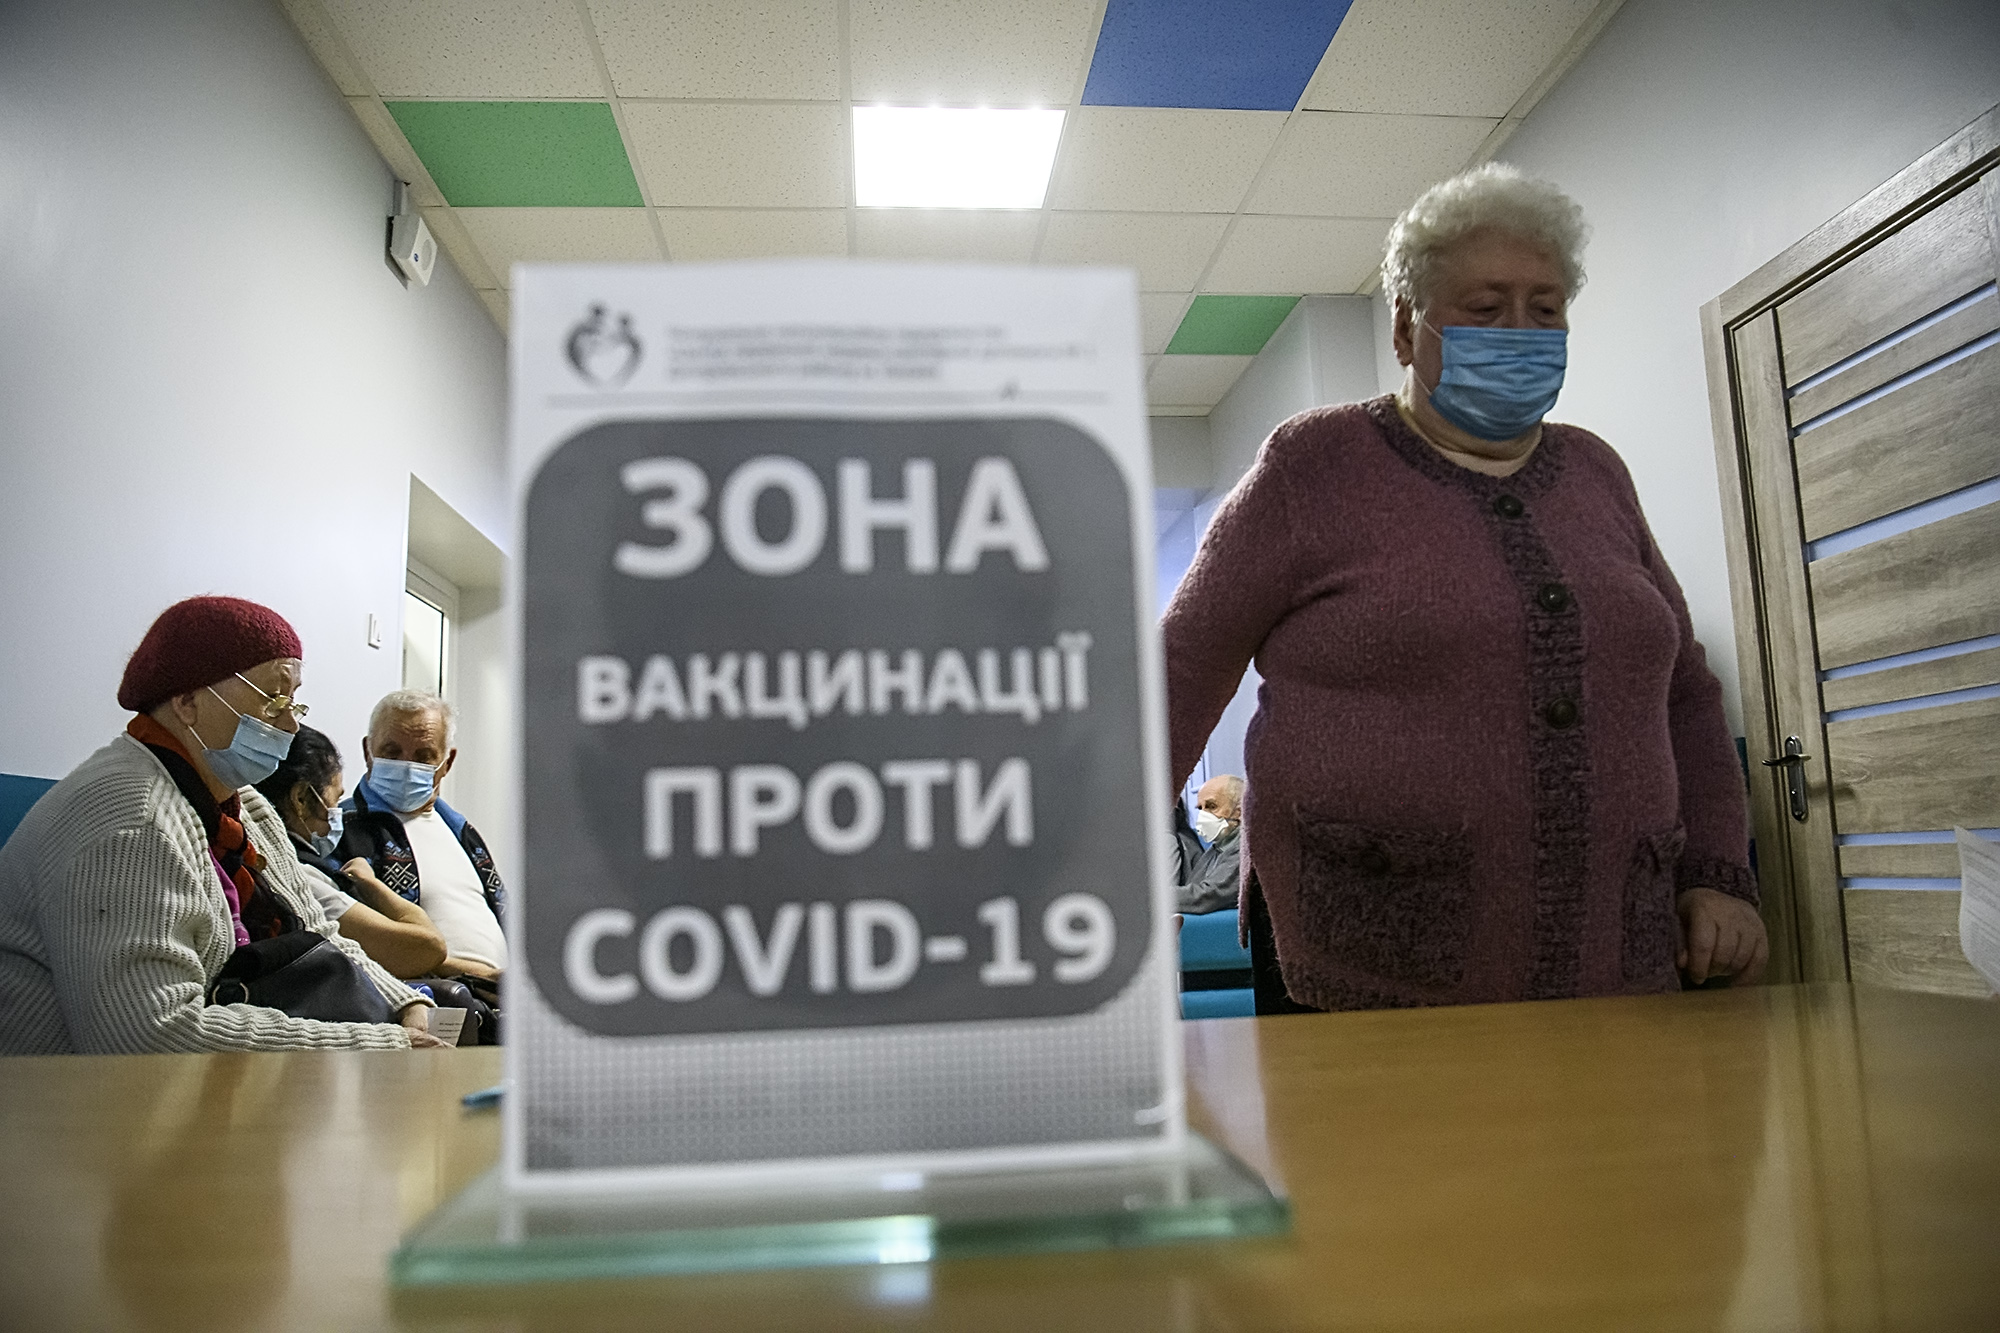 Складна ситуація із поширення ковід-інфекції в Україні та, зокрема, області укотре змушує замислитись над власним здоров’ям та безпекою рідних.